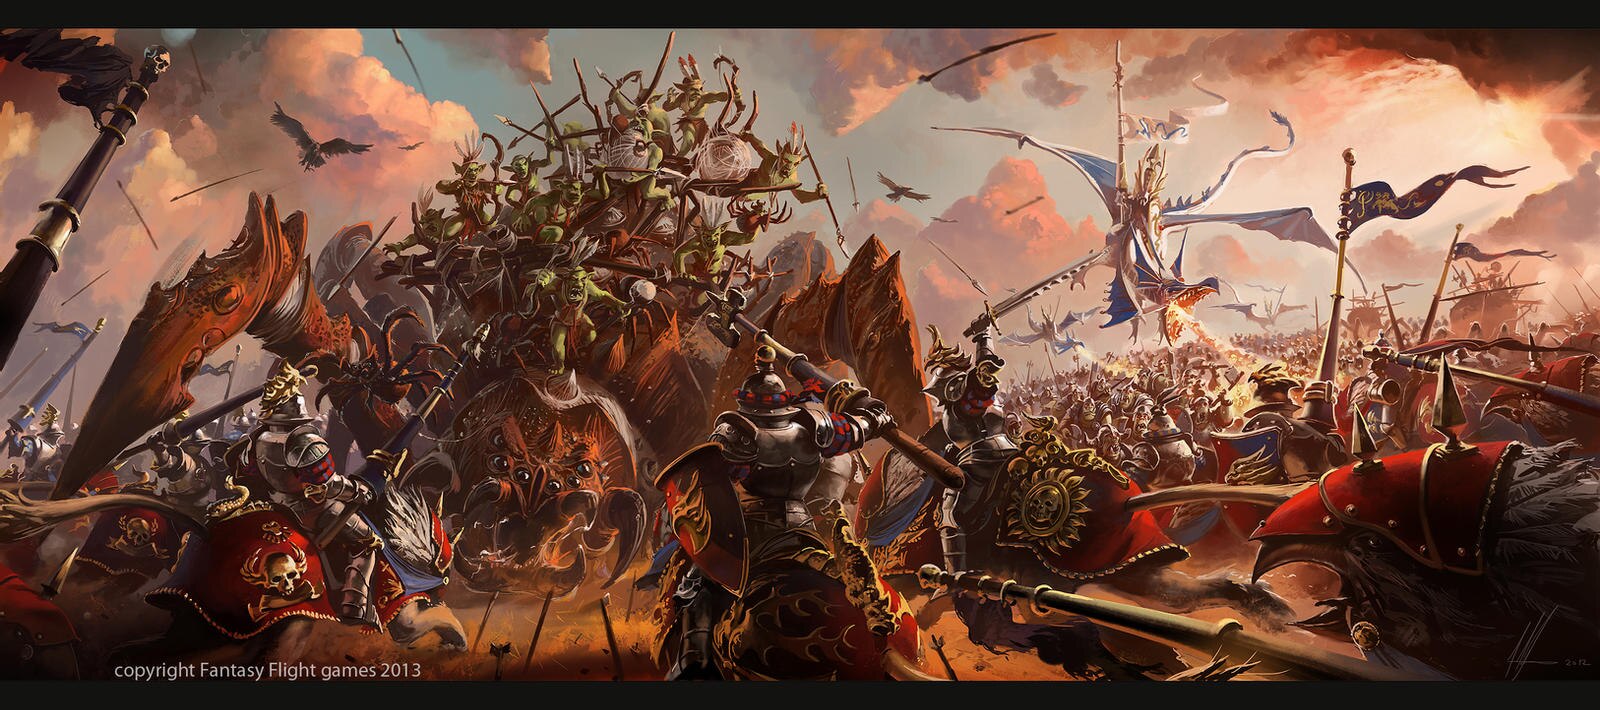 Steam Workshop::Warhammer Fantasy Battles/Warhammer Armies Project